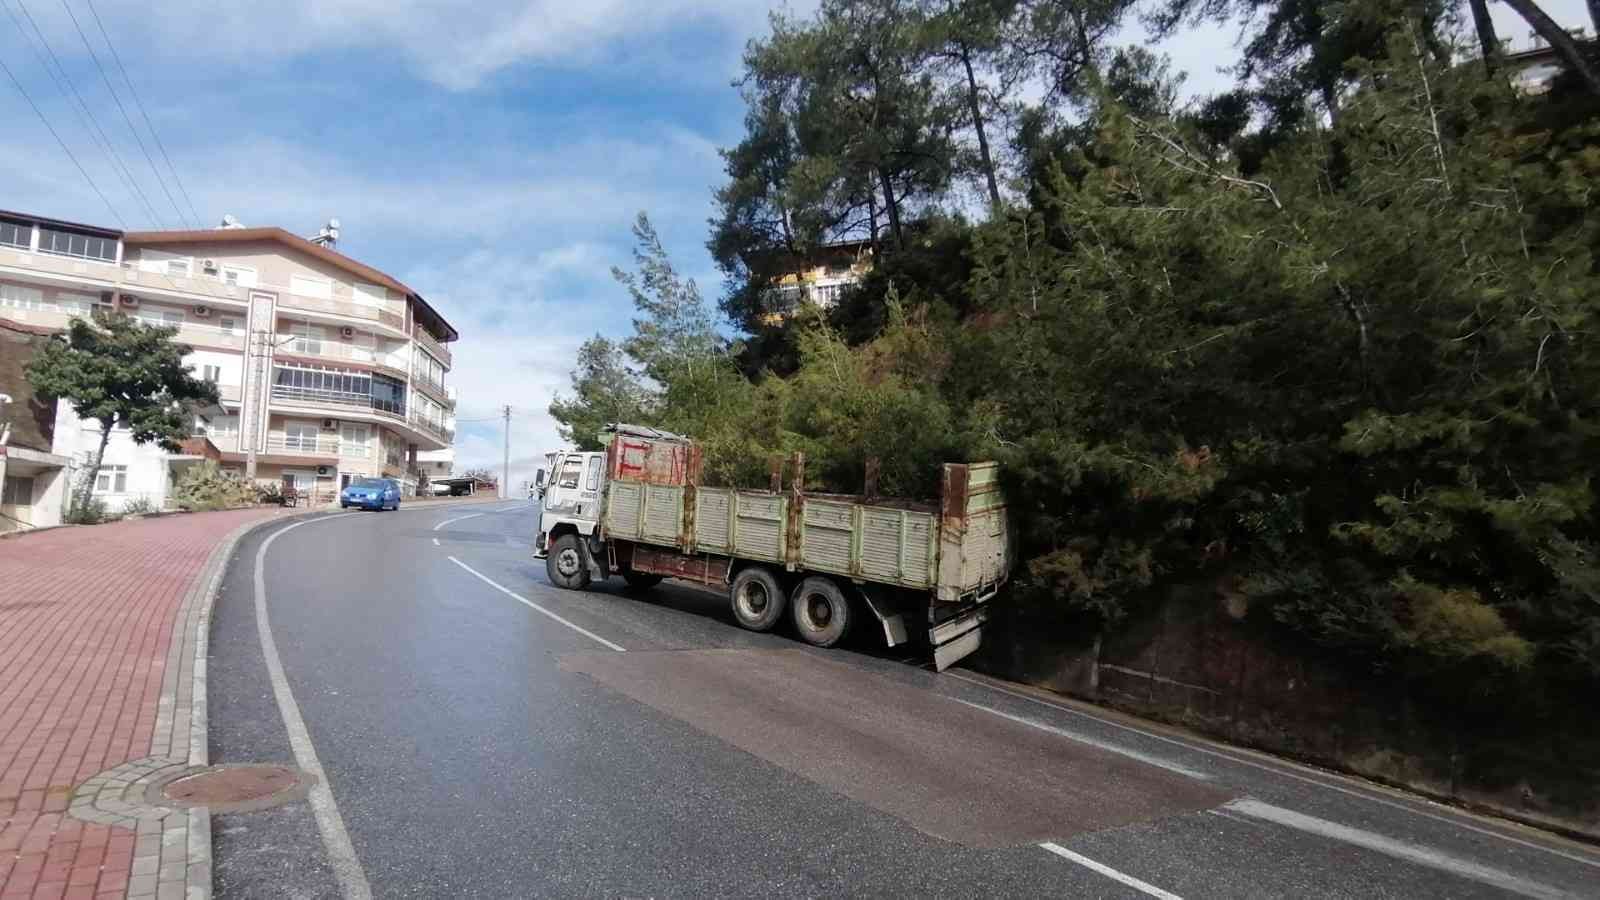 Rampada arıza yapan kamyonunu şarampole düşürerek muhtemel bir faciayı önledi #antalya